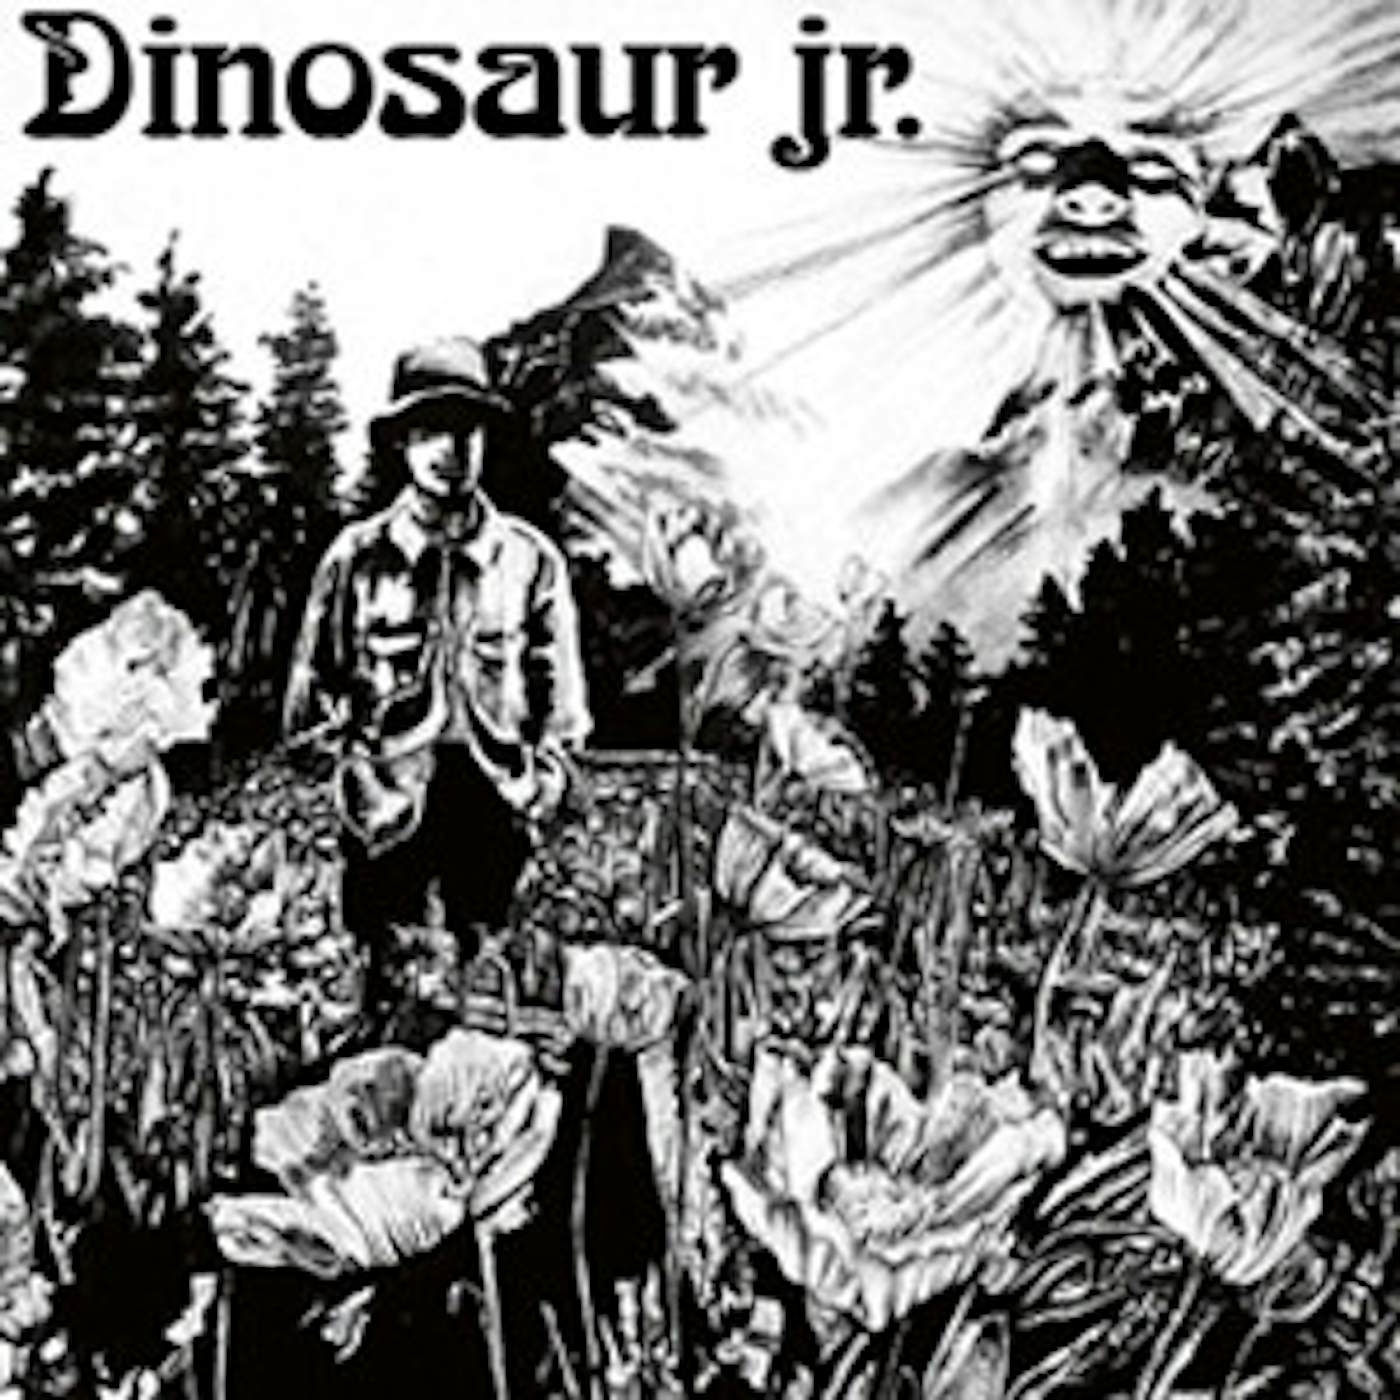 Dinosaur Jr. Vinyl Record